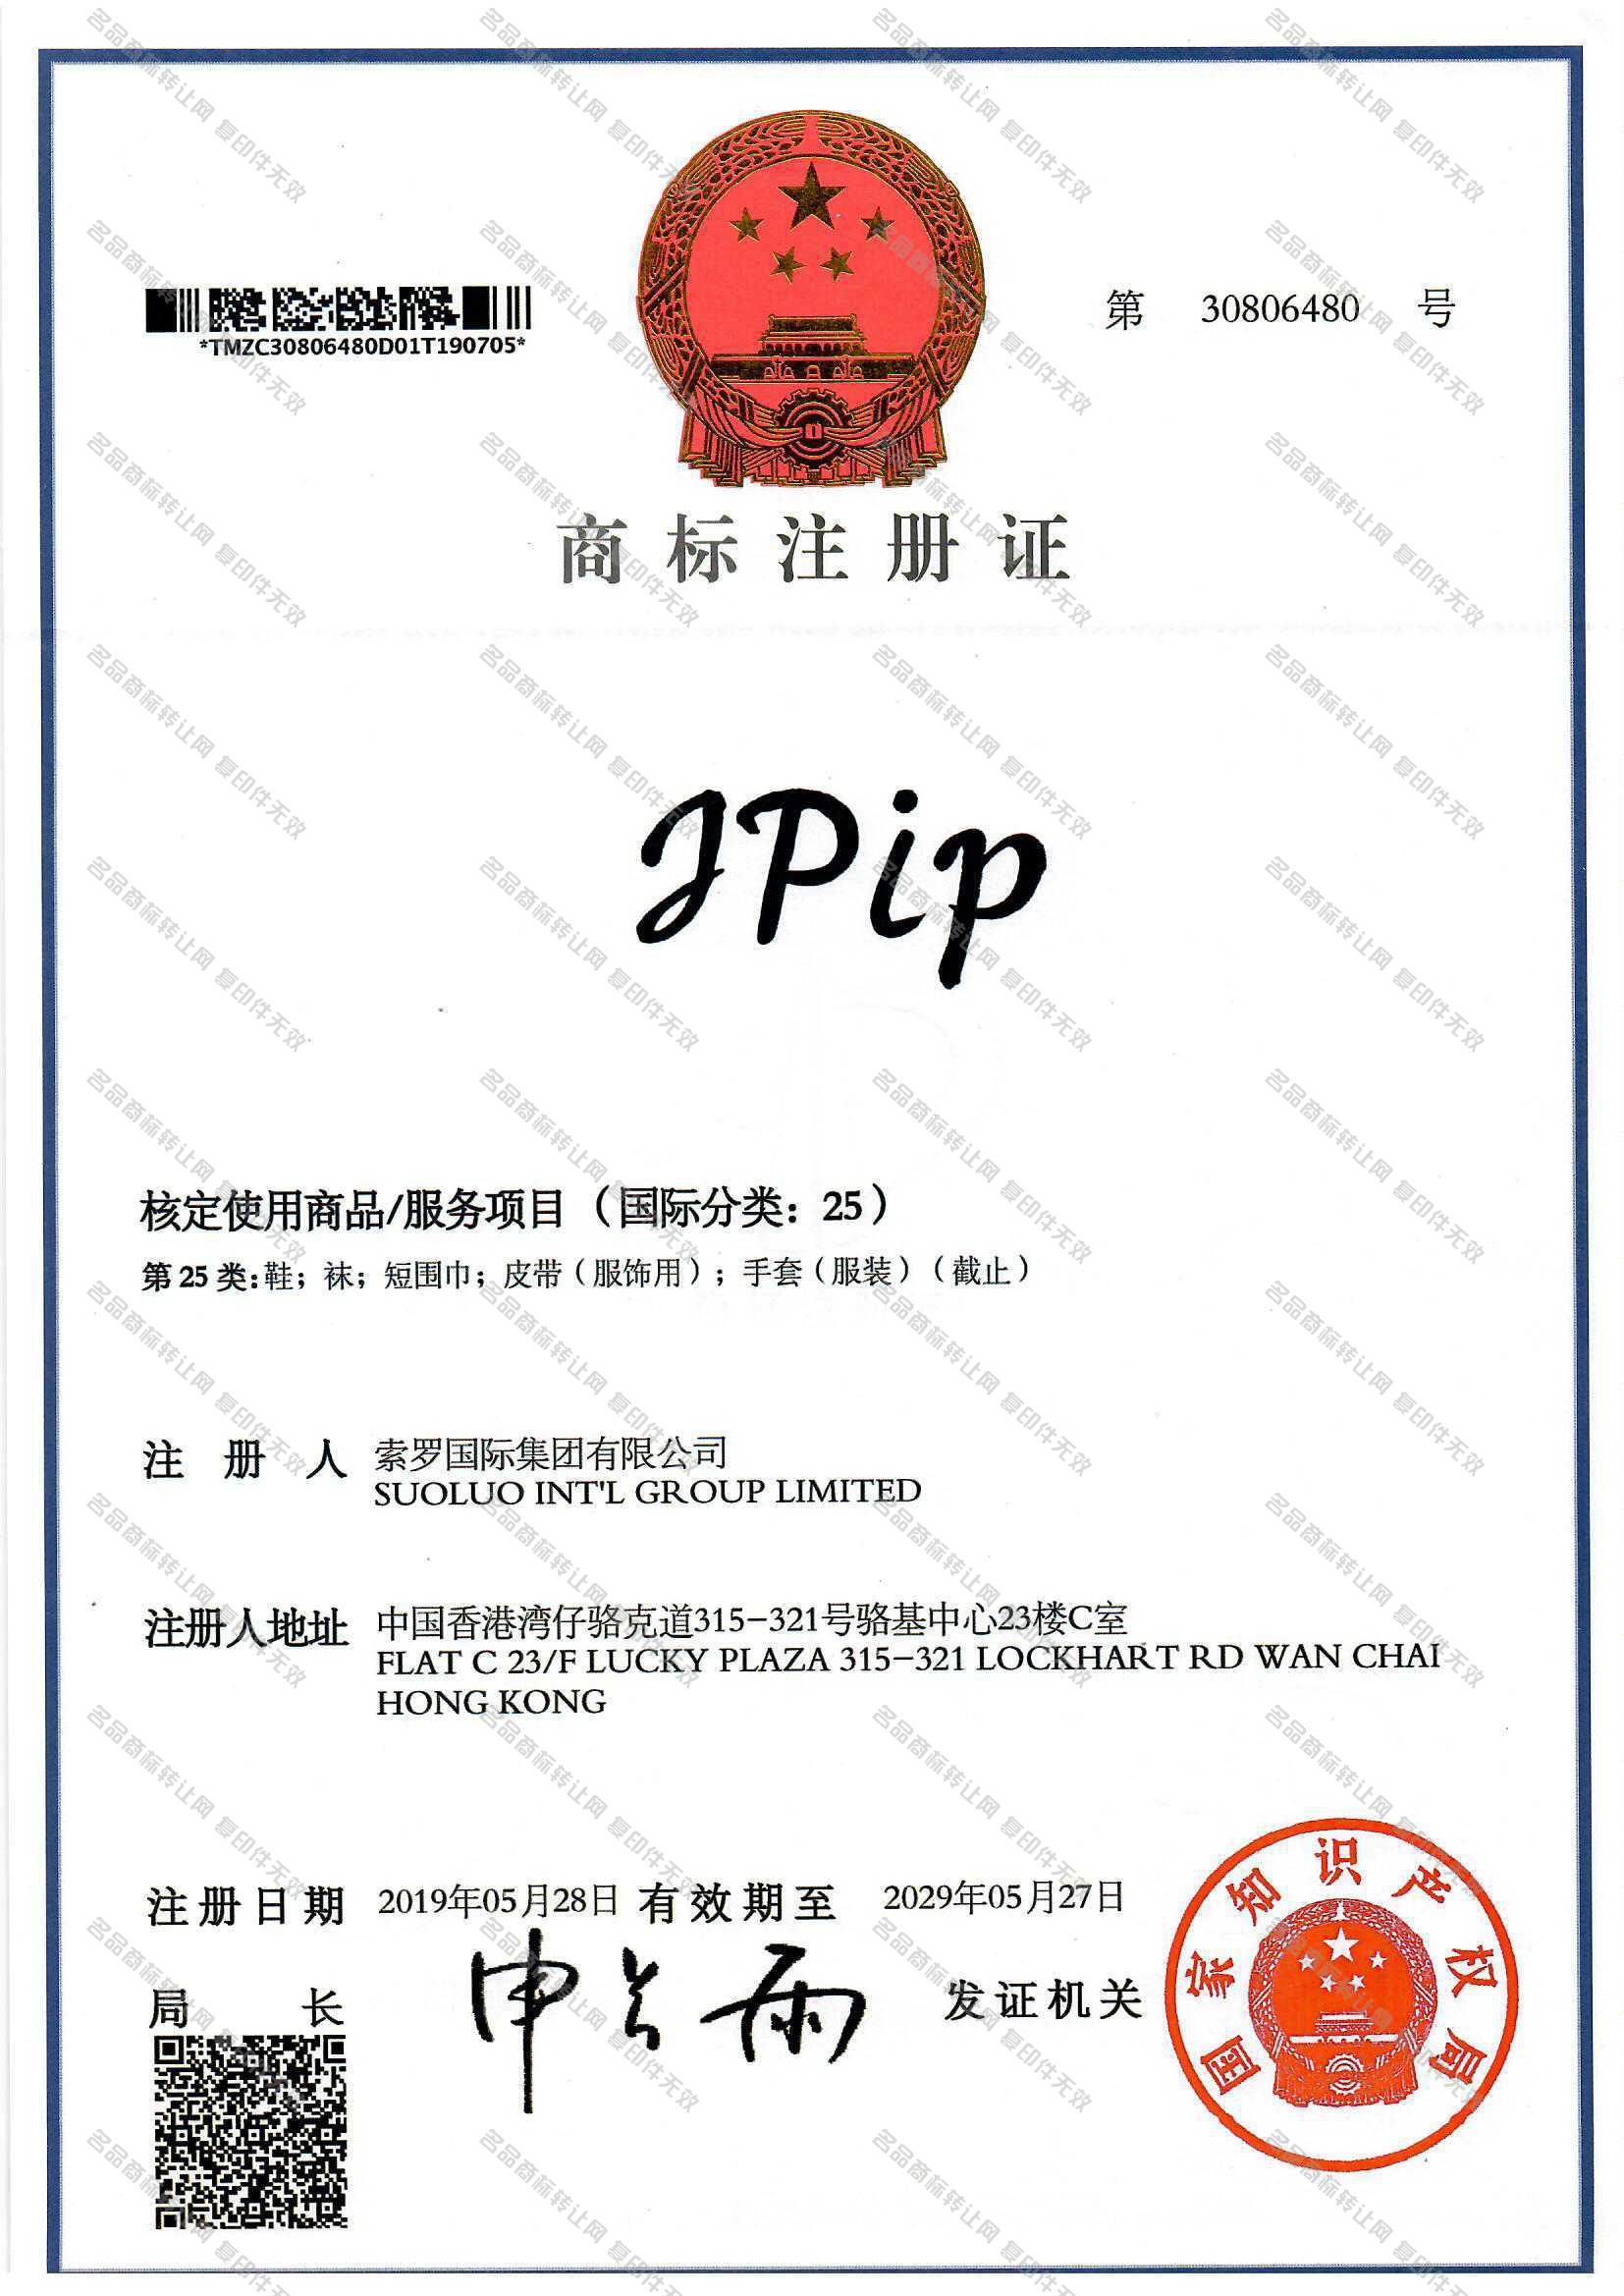 JPIP注册证